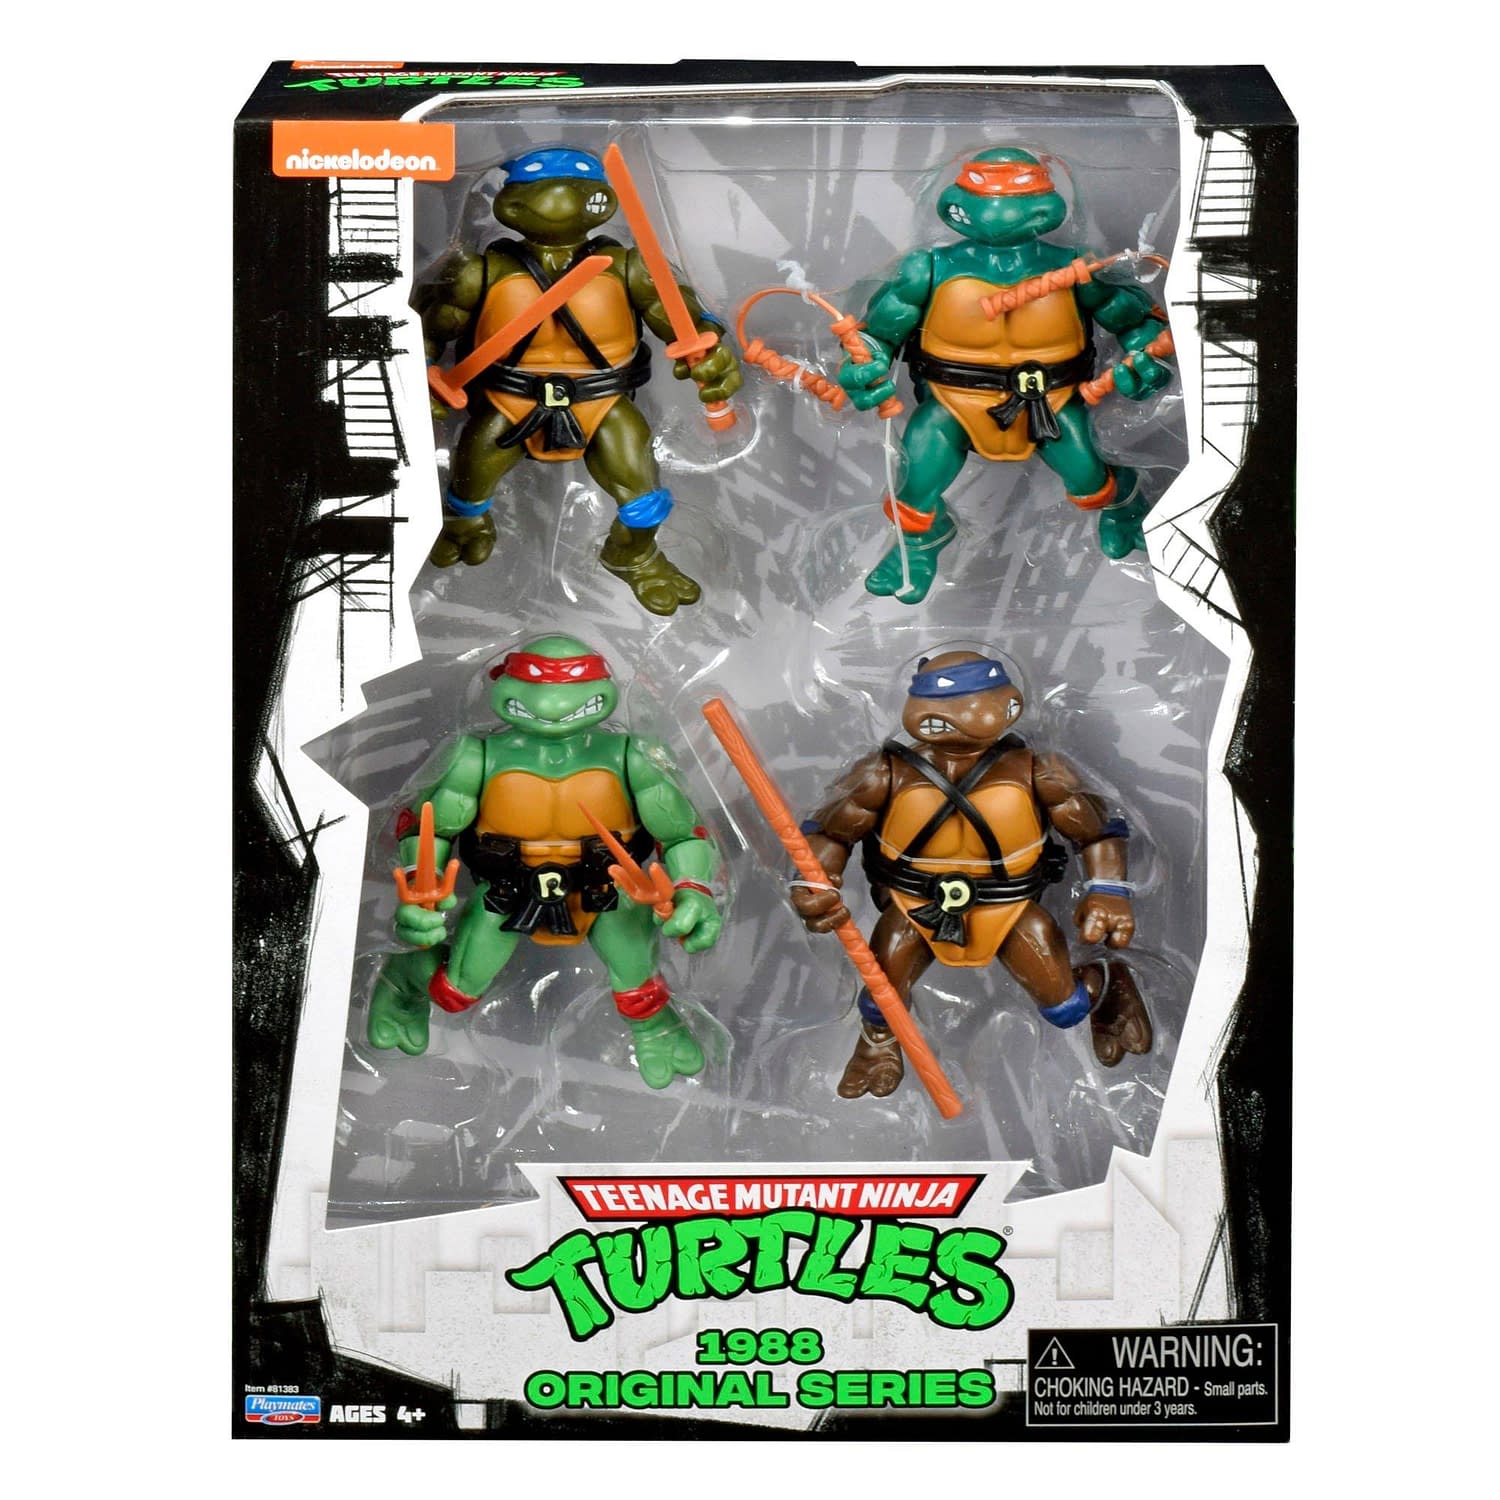 1980s ninja turtles action figures